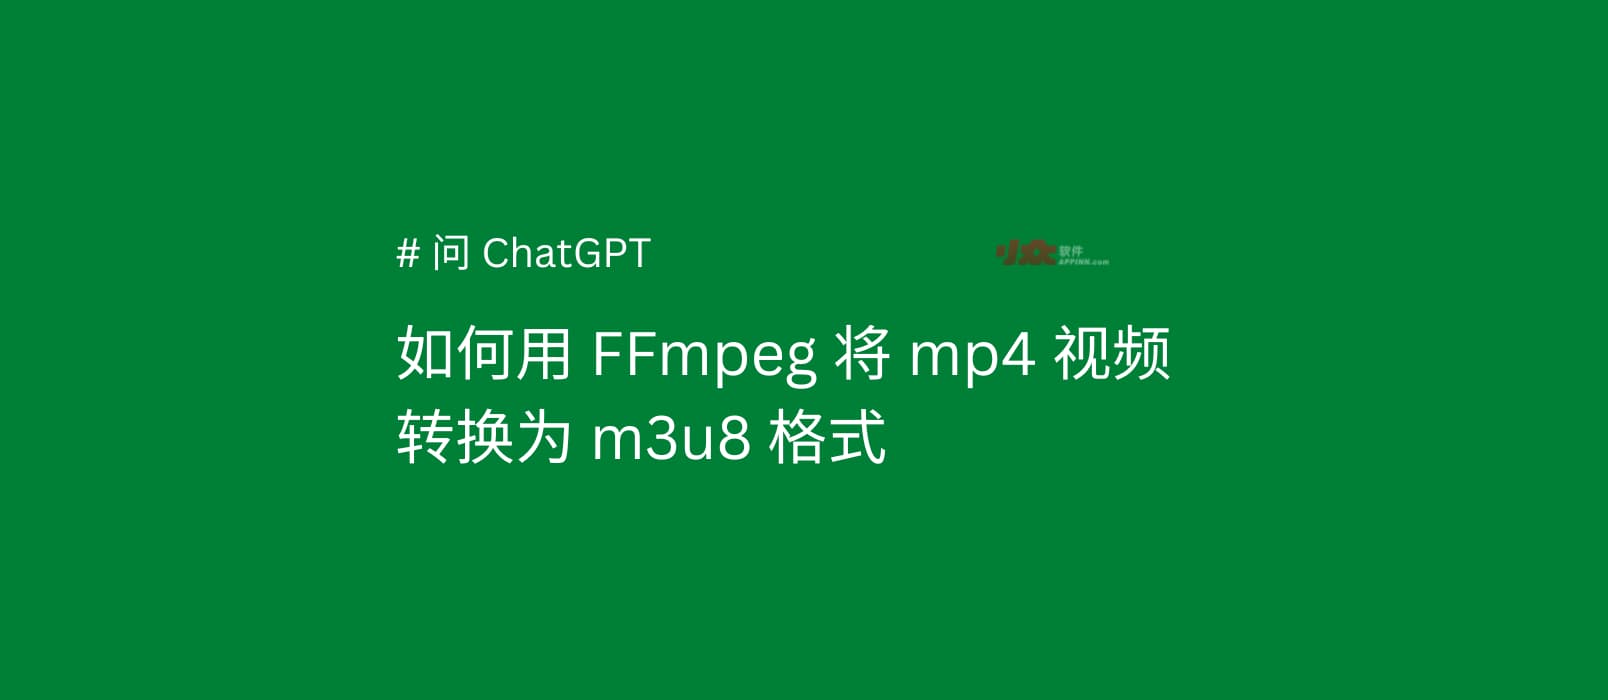 如何将 MP4 转换为 M3U8 格式？#问ChatGPT